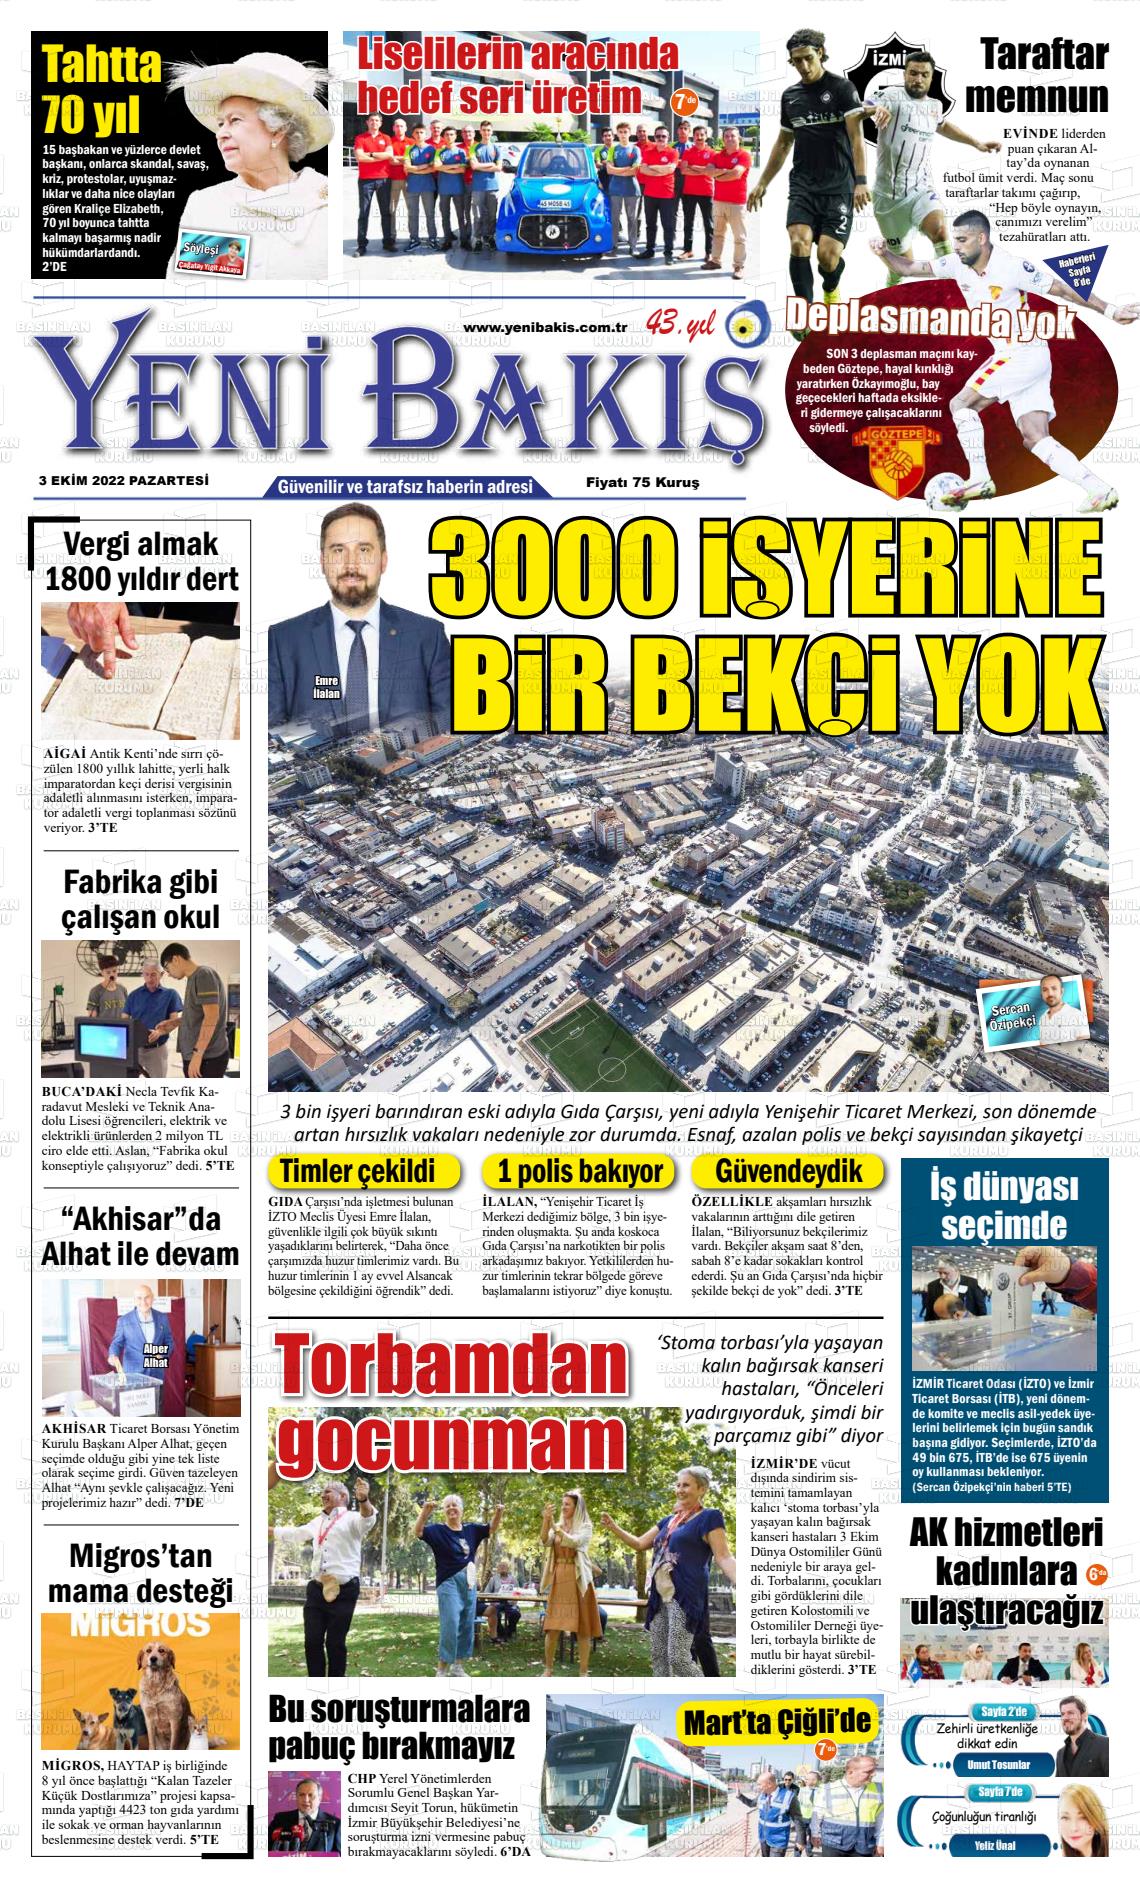 03 Ekim 2022 Yeni Bakış Gazete Manşeti